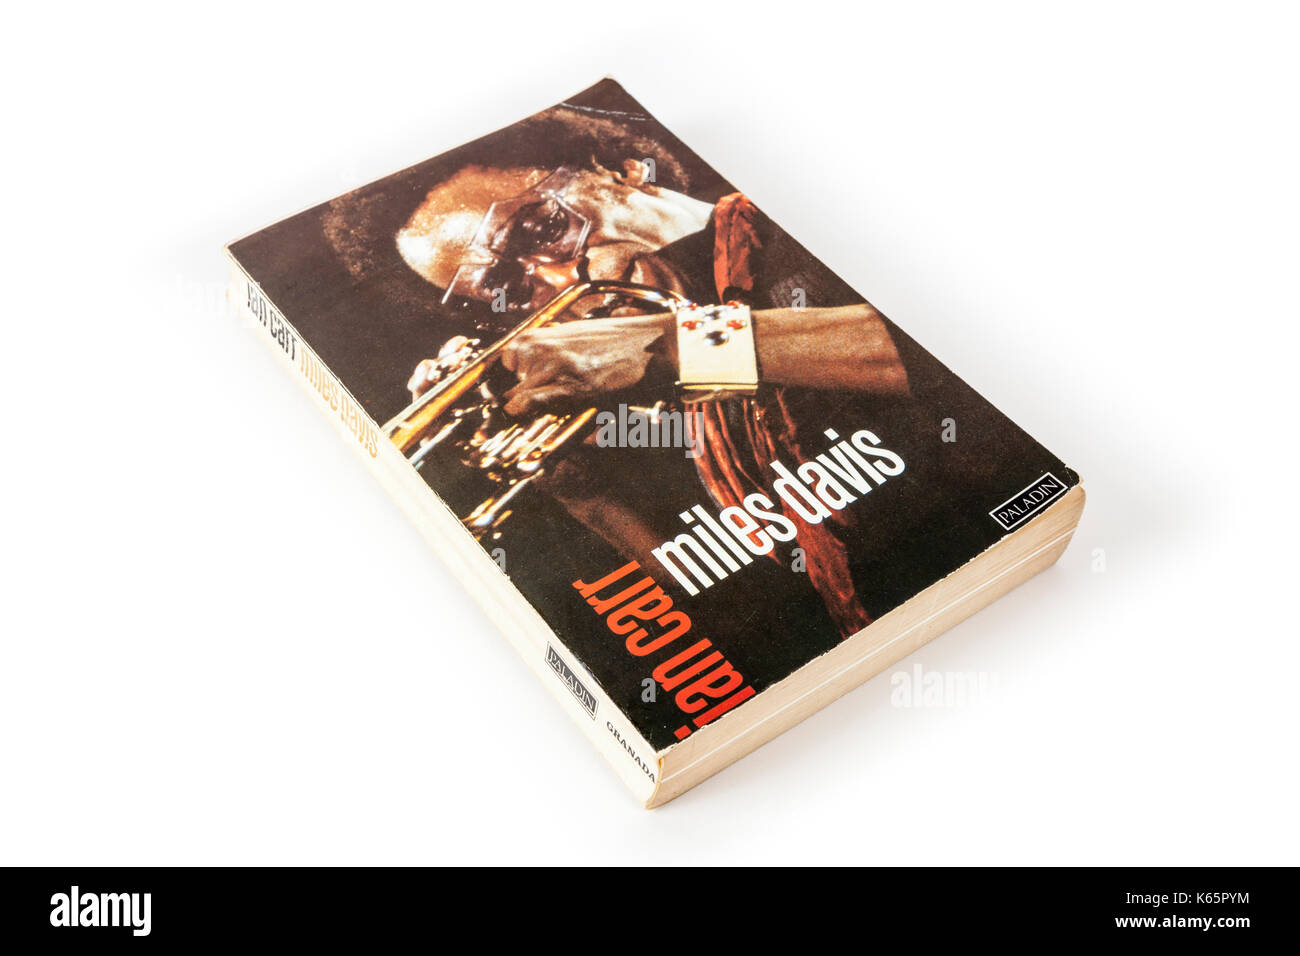 Biographie von Miles Davis von Ian Carr auf weißem Hintergrund Stockfoto